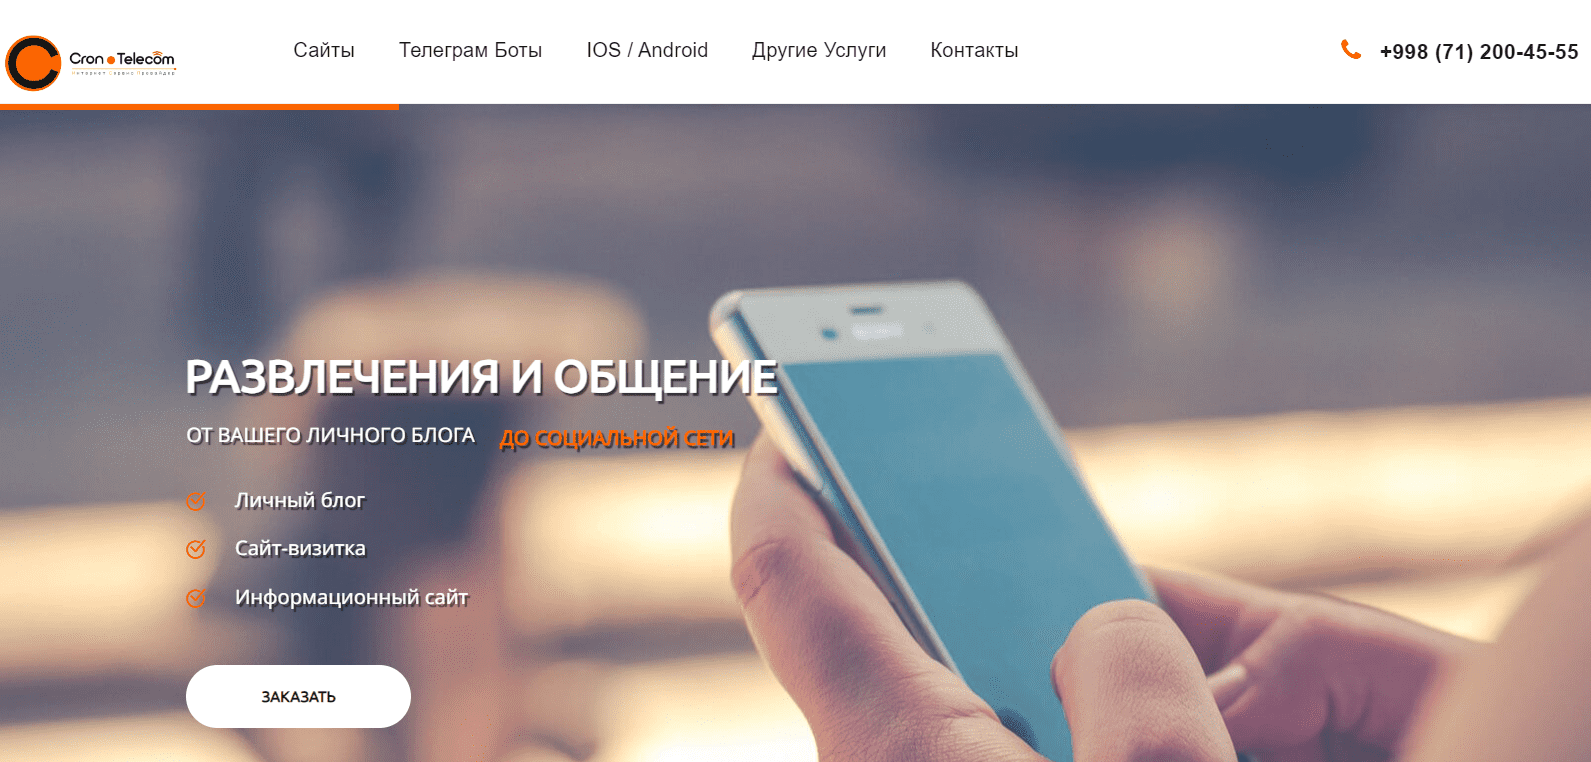 Cron Telecom (cron.uz) - официальный сайт